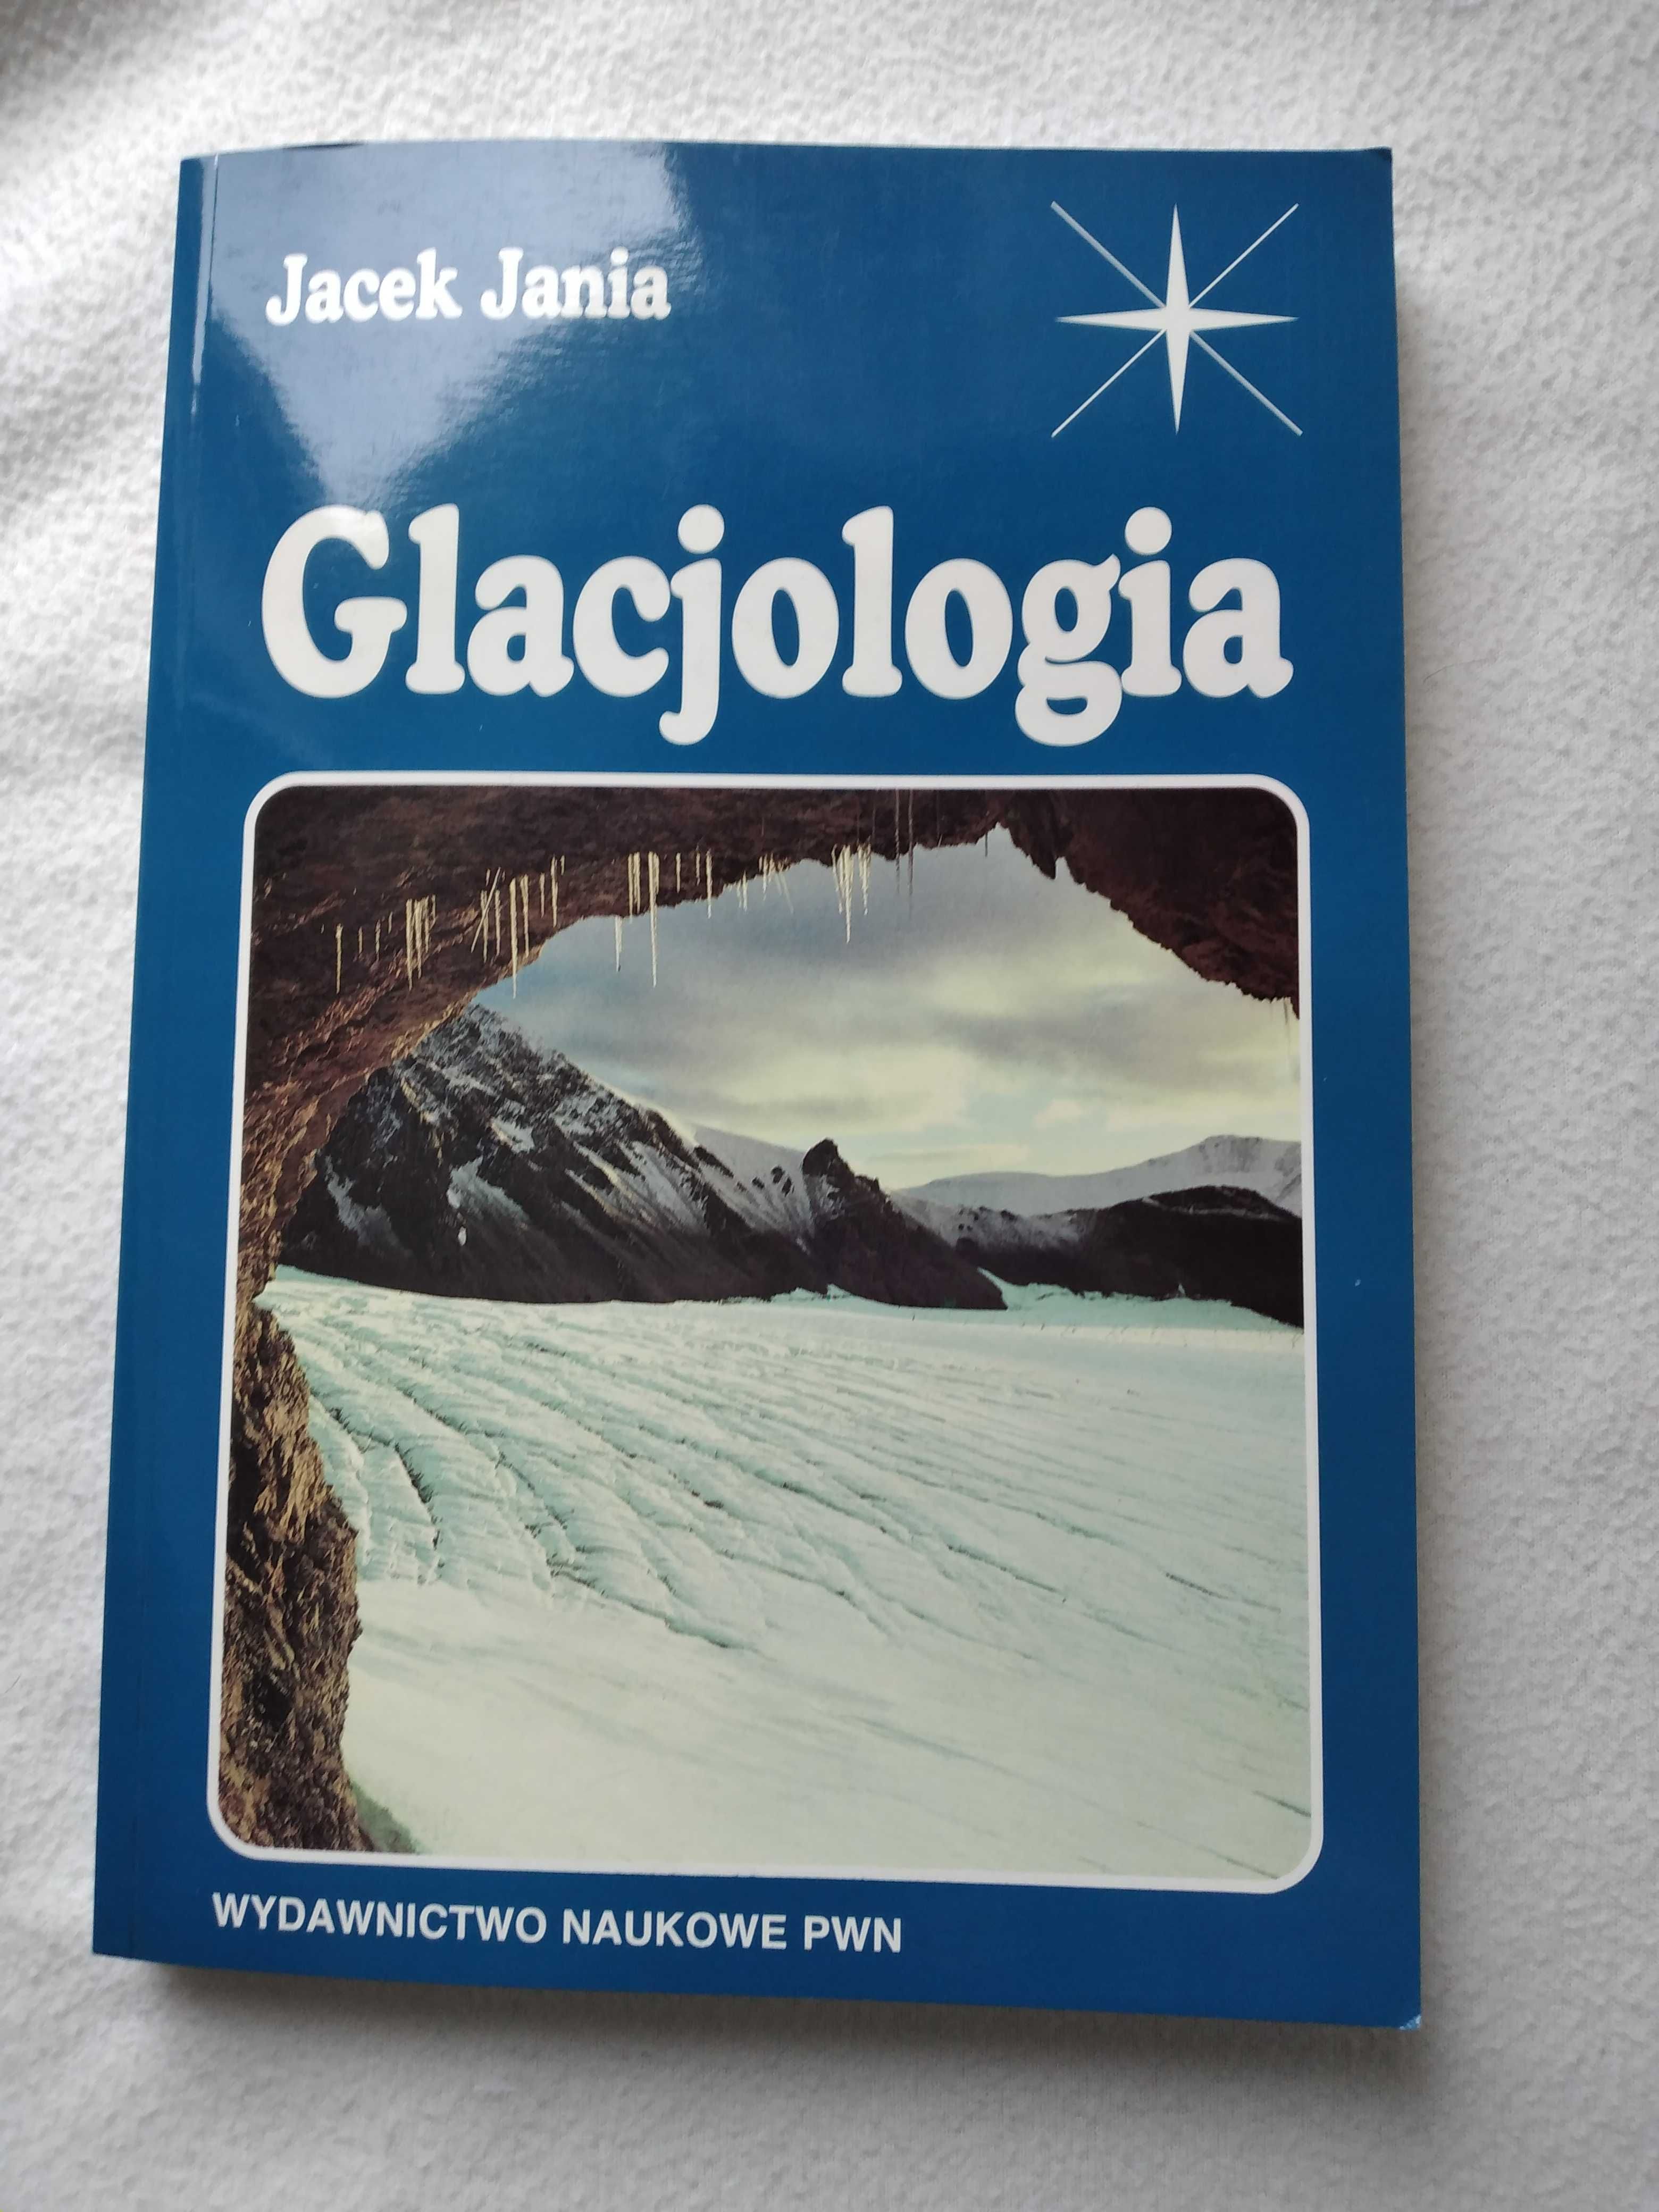 Jedyny polski podręcznik o lodowcach "Glacjologia" 359 stron PWN.